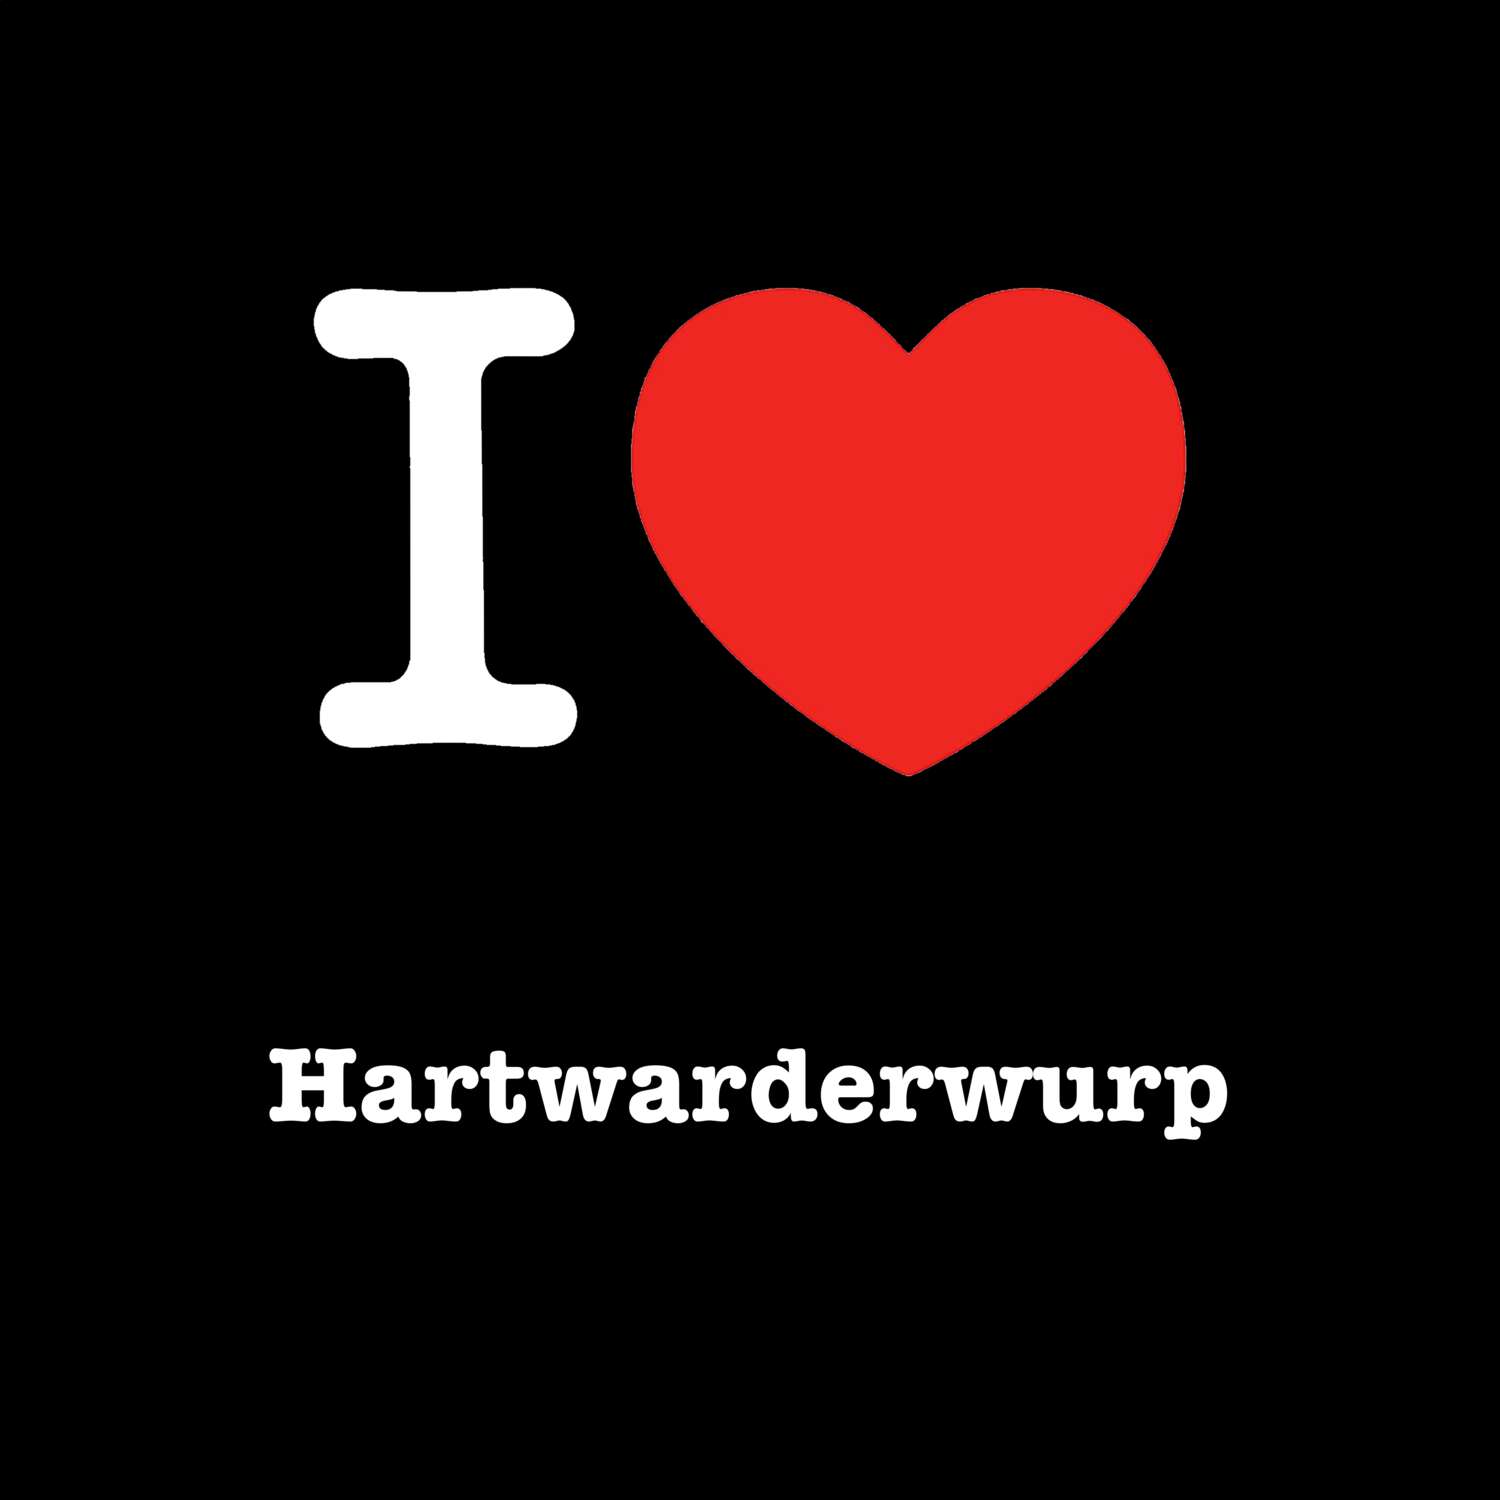 Hartwarderwurp T-Shirt »I love«